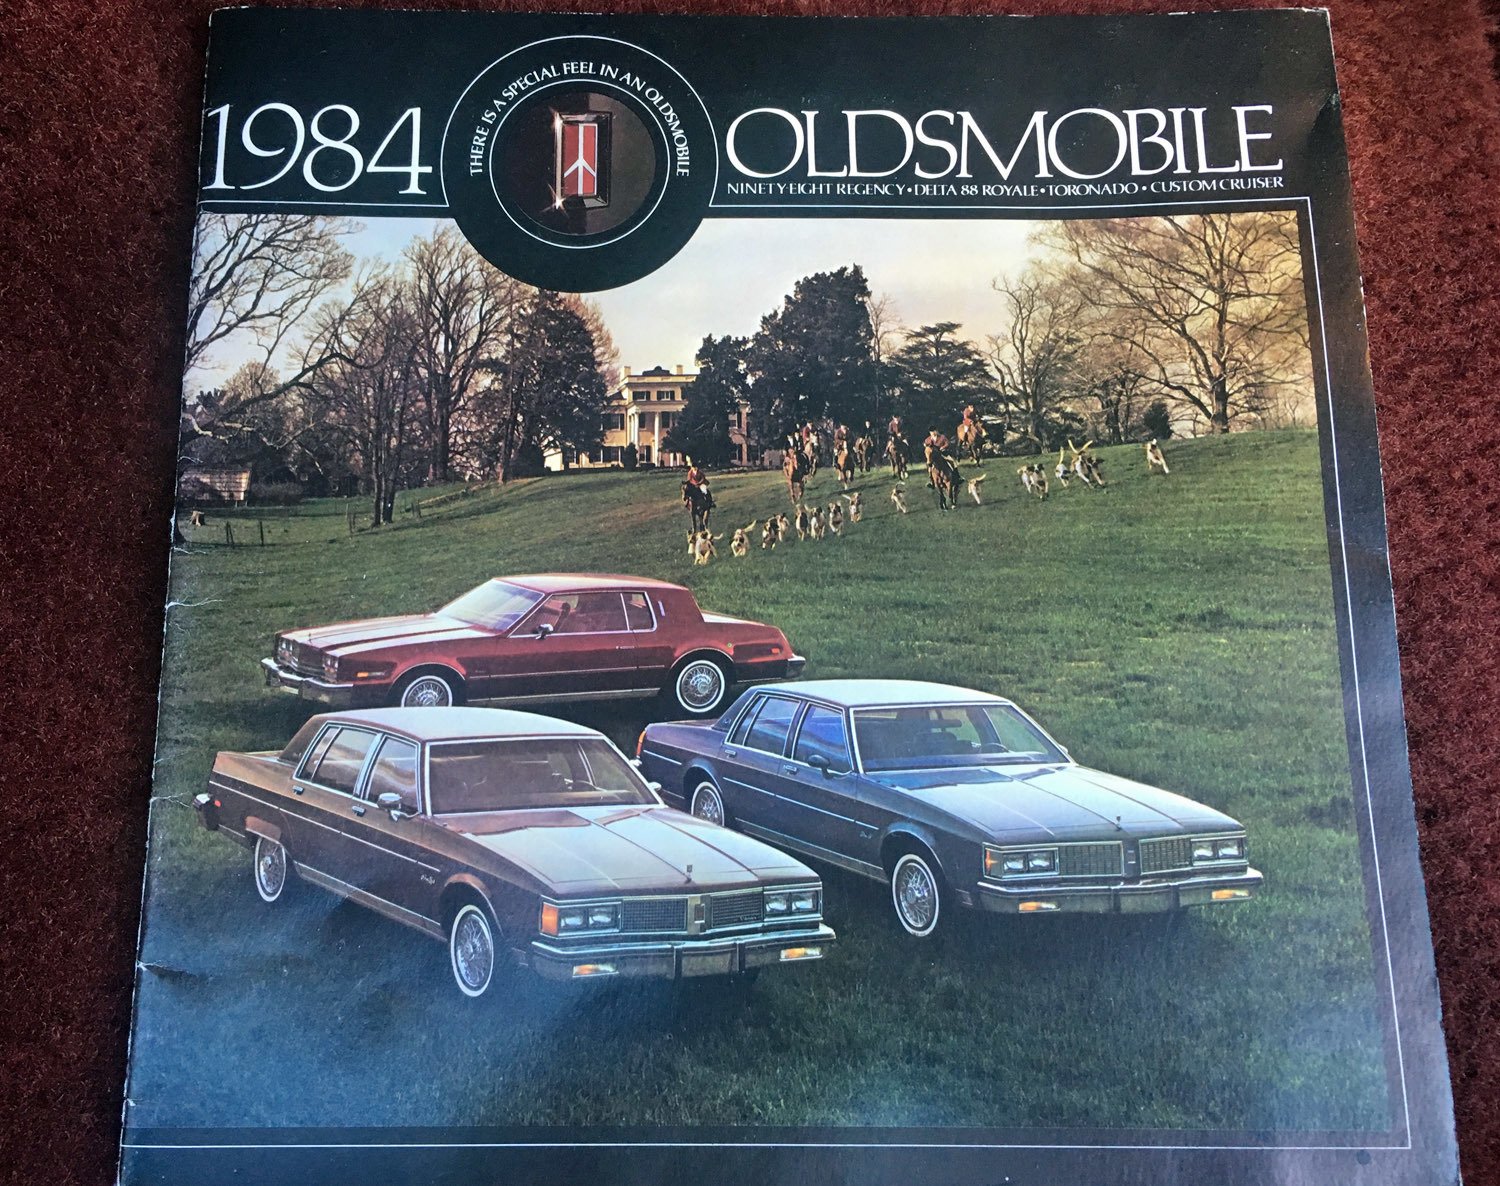 1984 Oldsmobile Delta 88